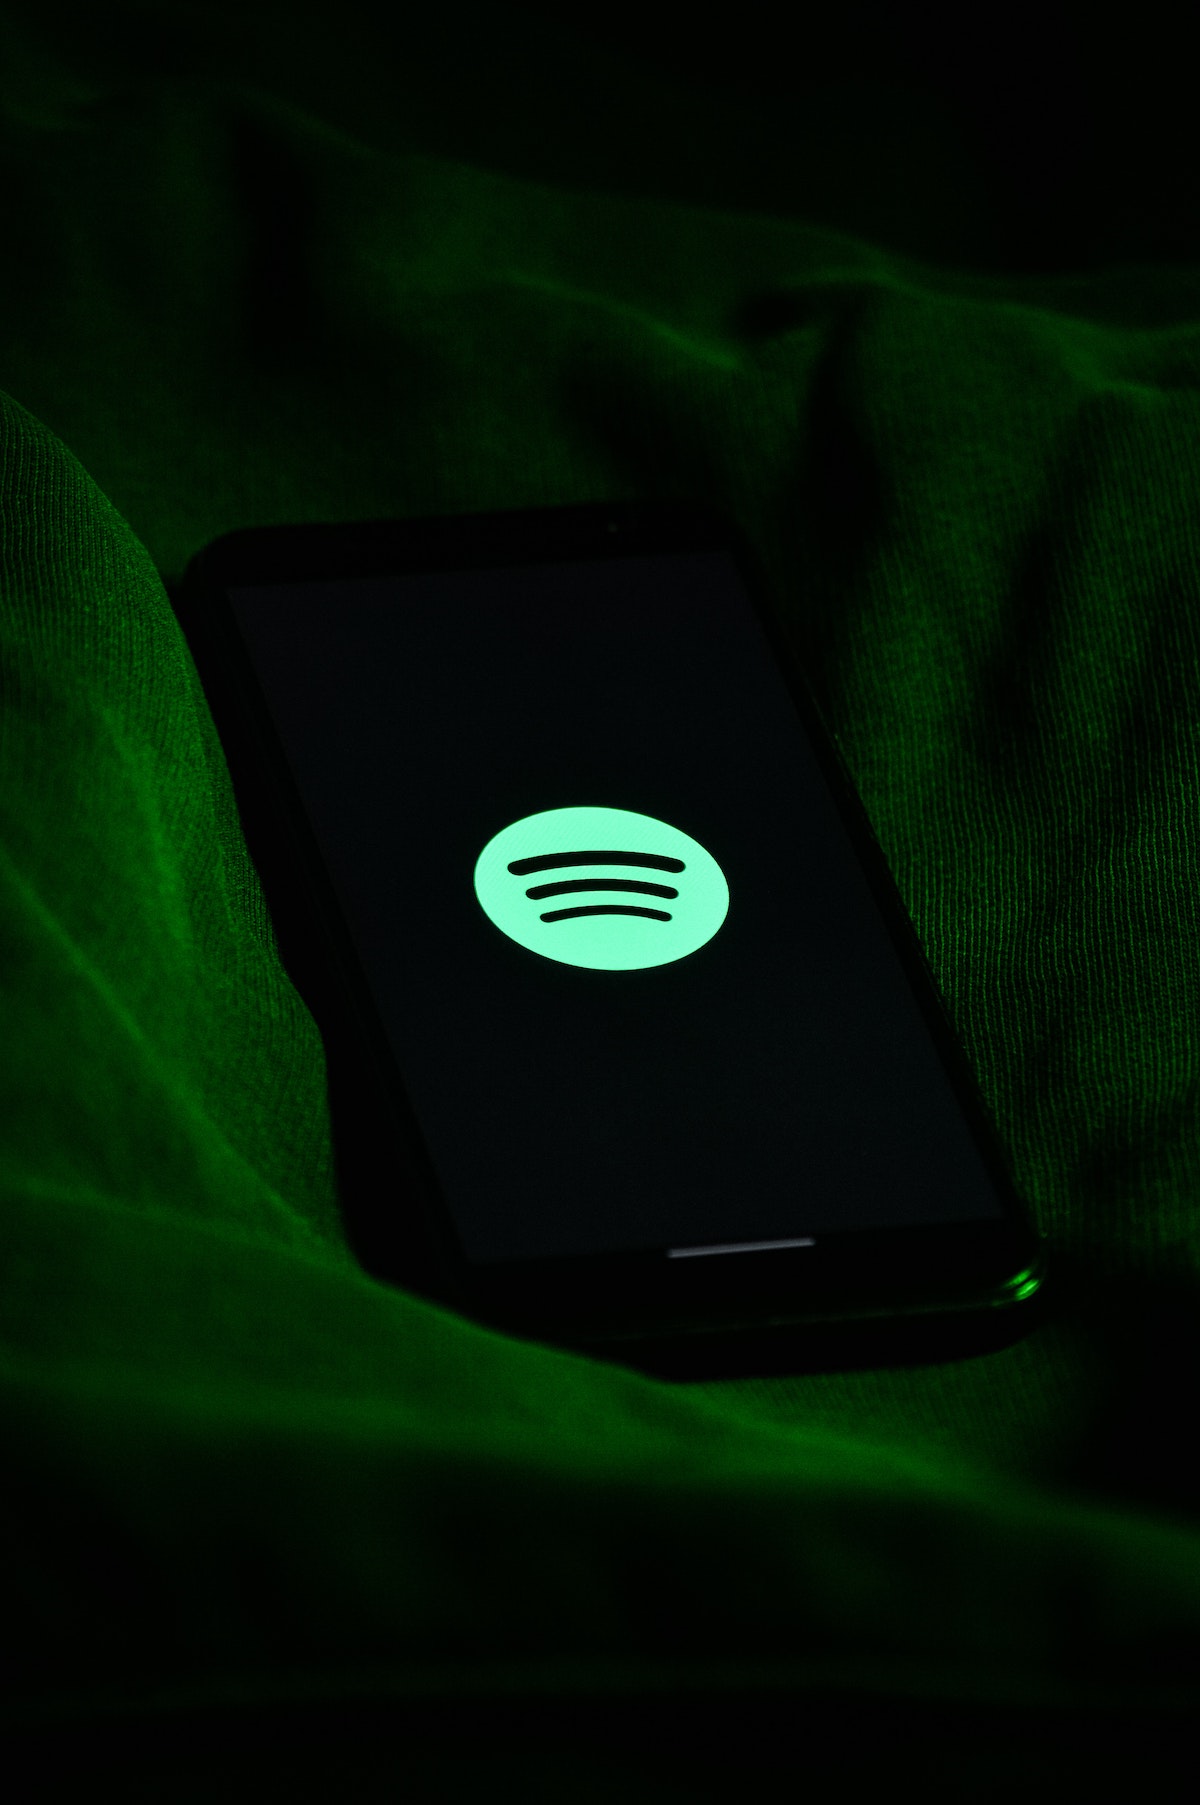 Spotify logo neon